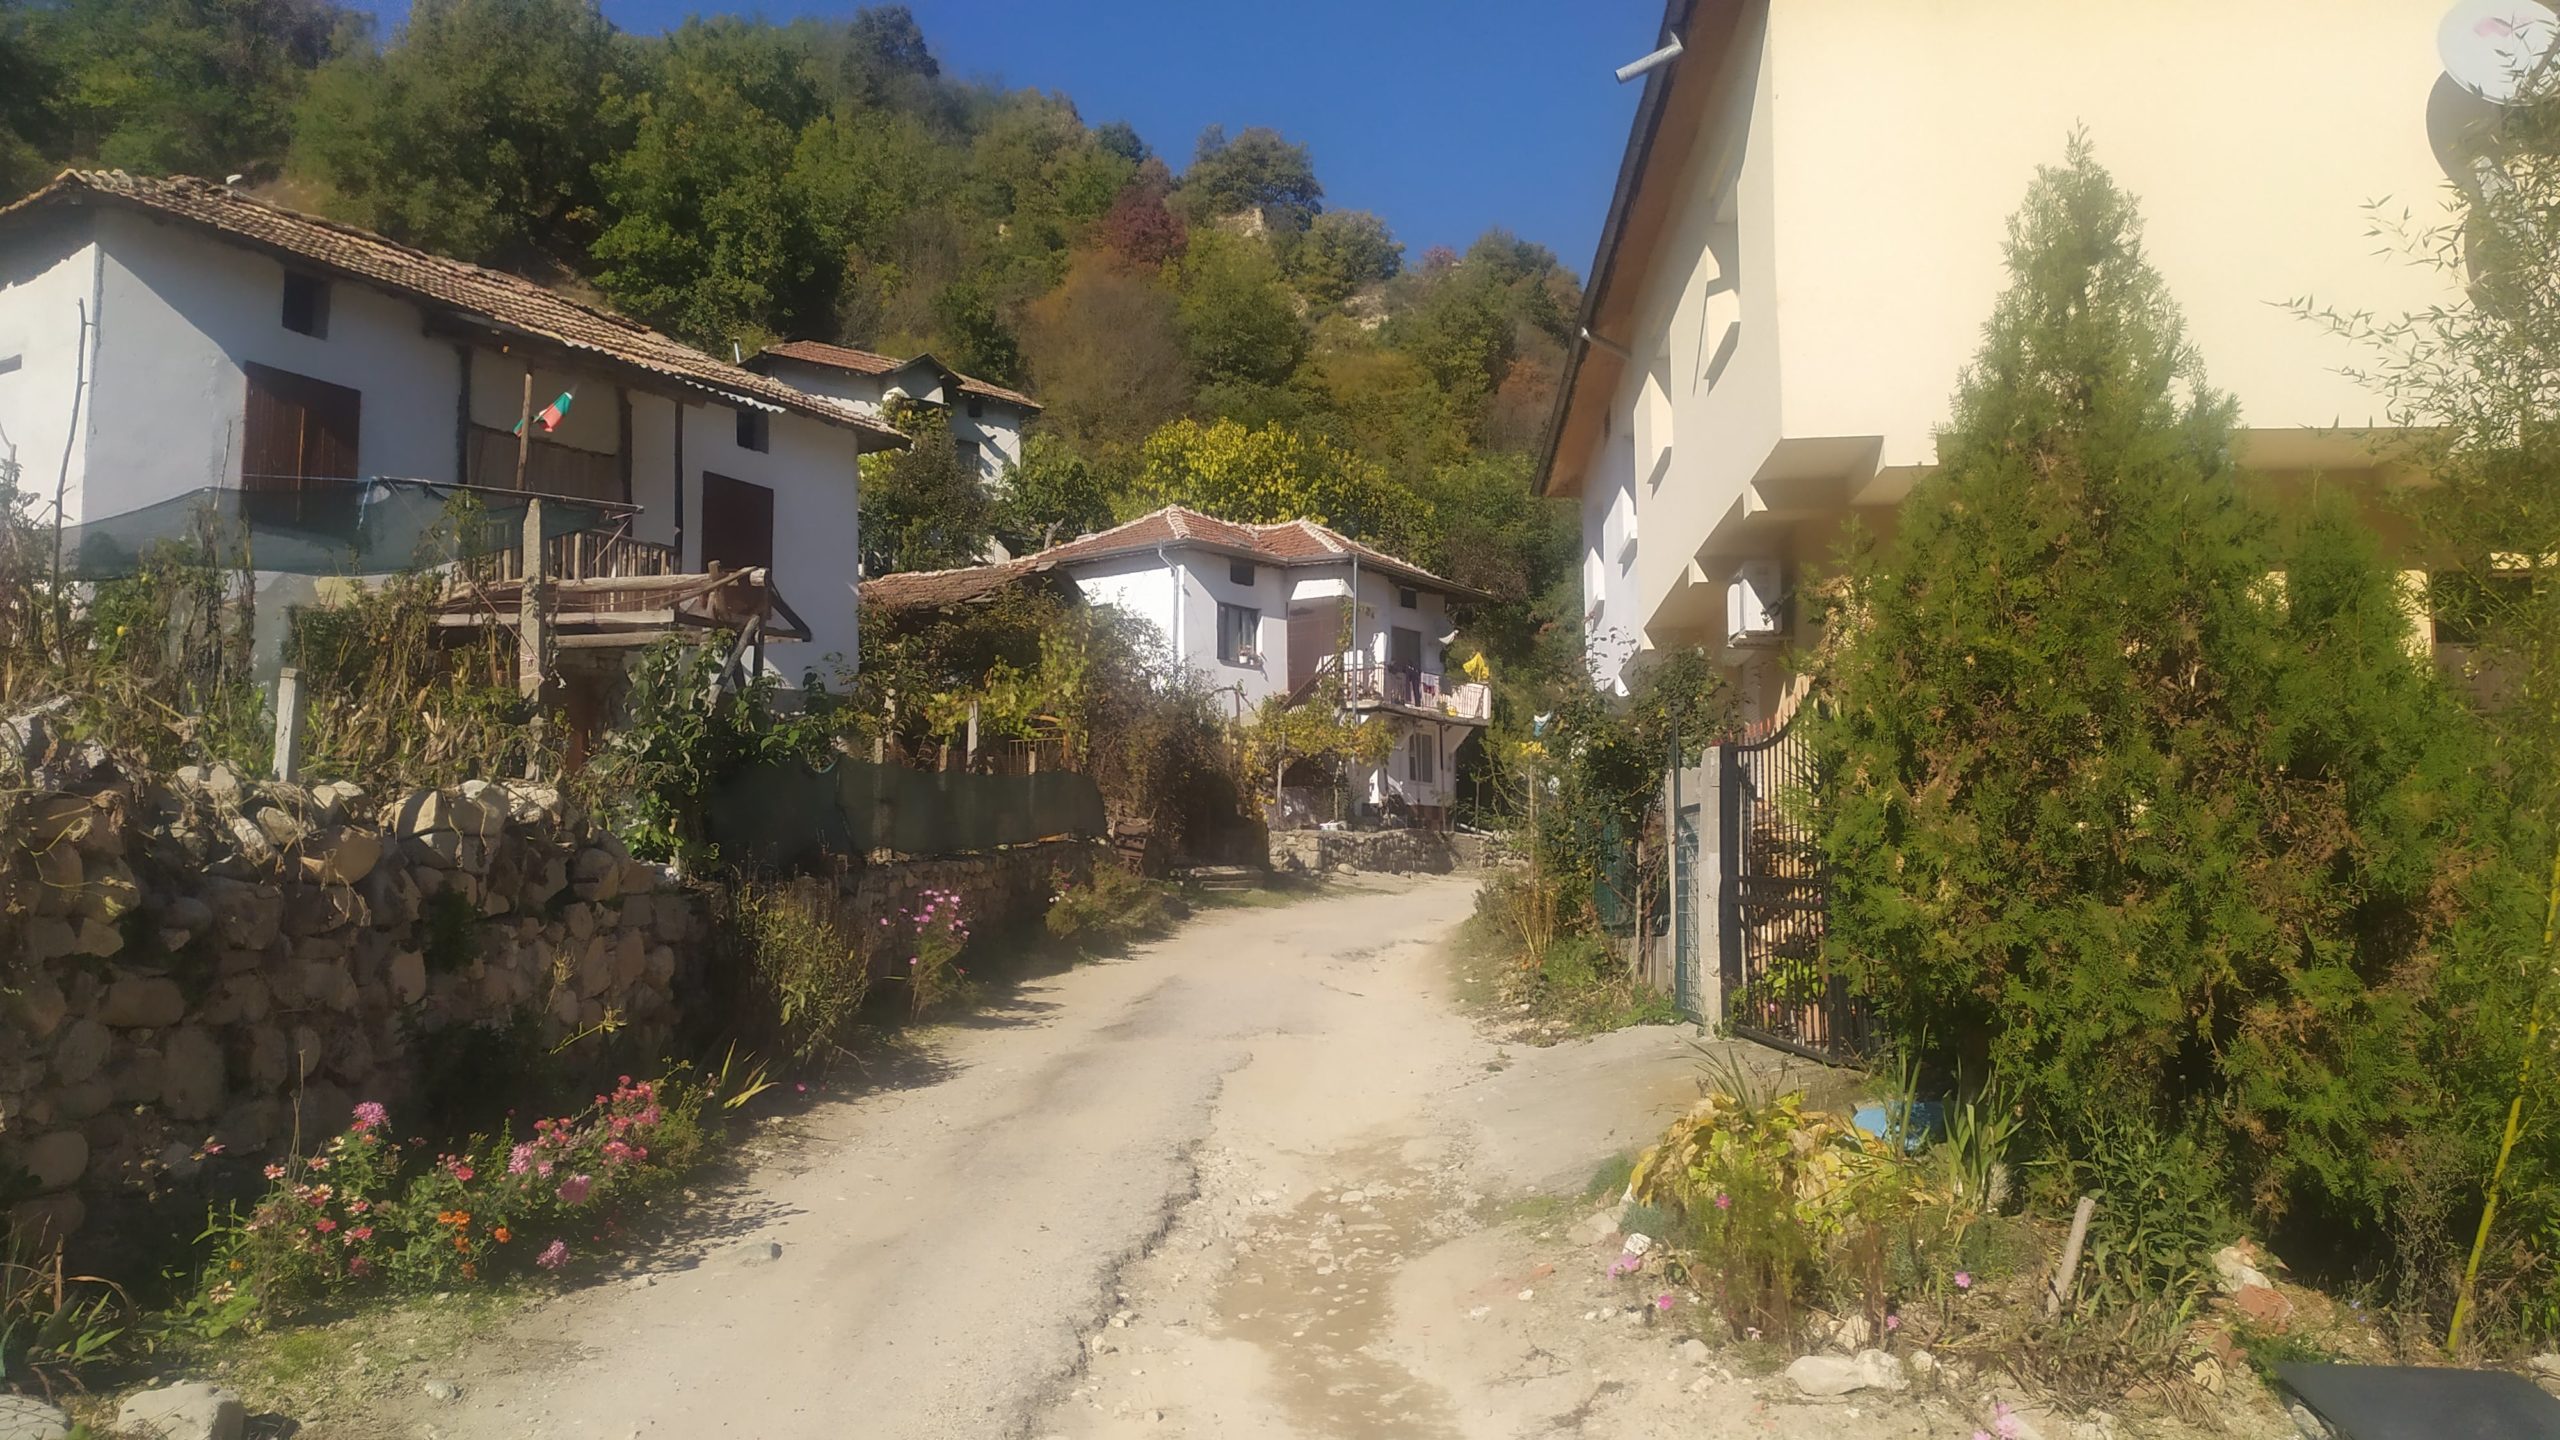 Un petit village avec des maisons entourées d'arbres où il est difficile de se repérer